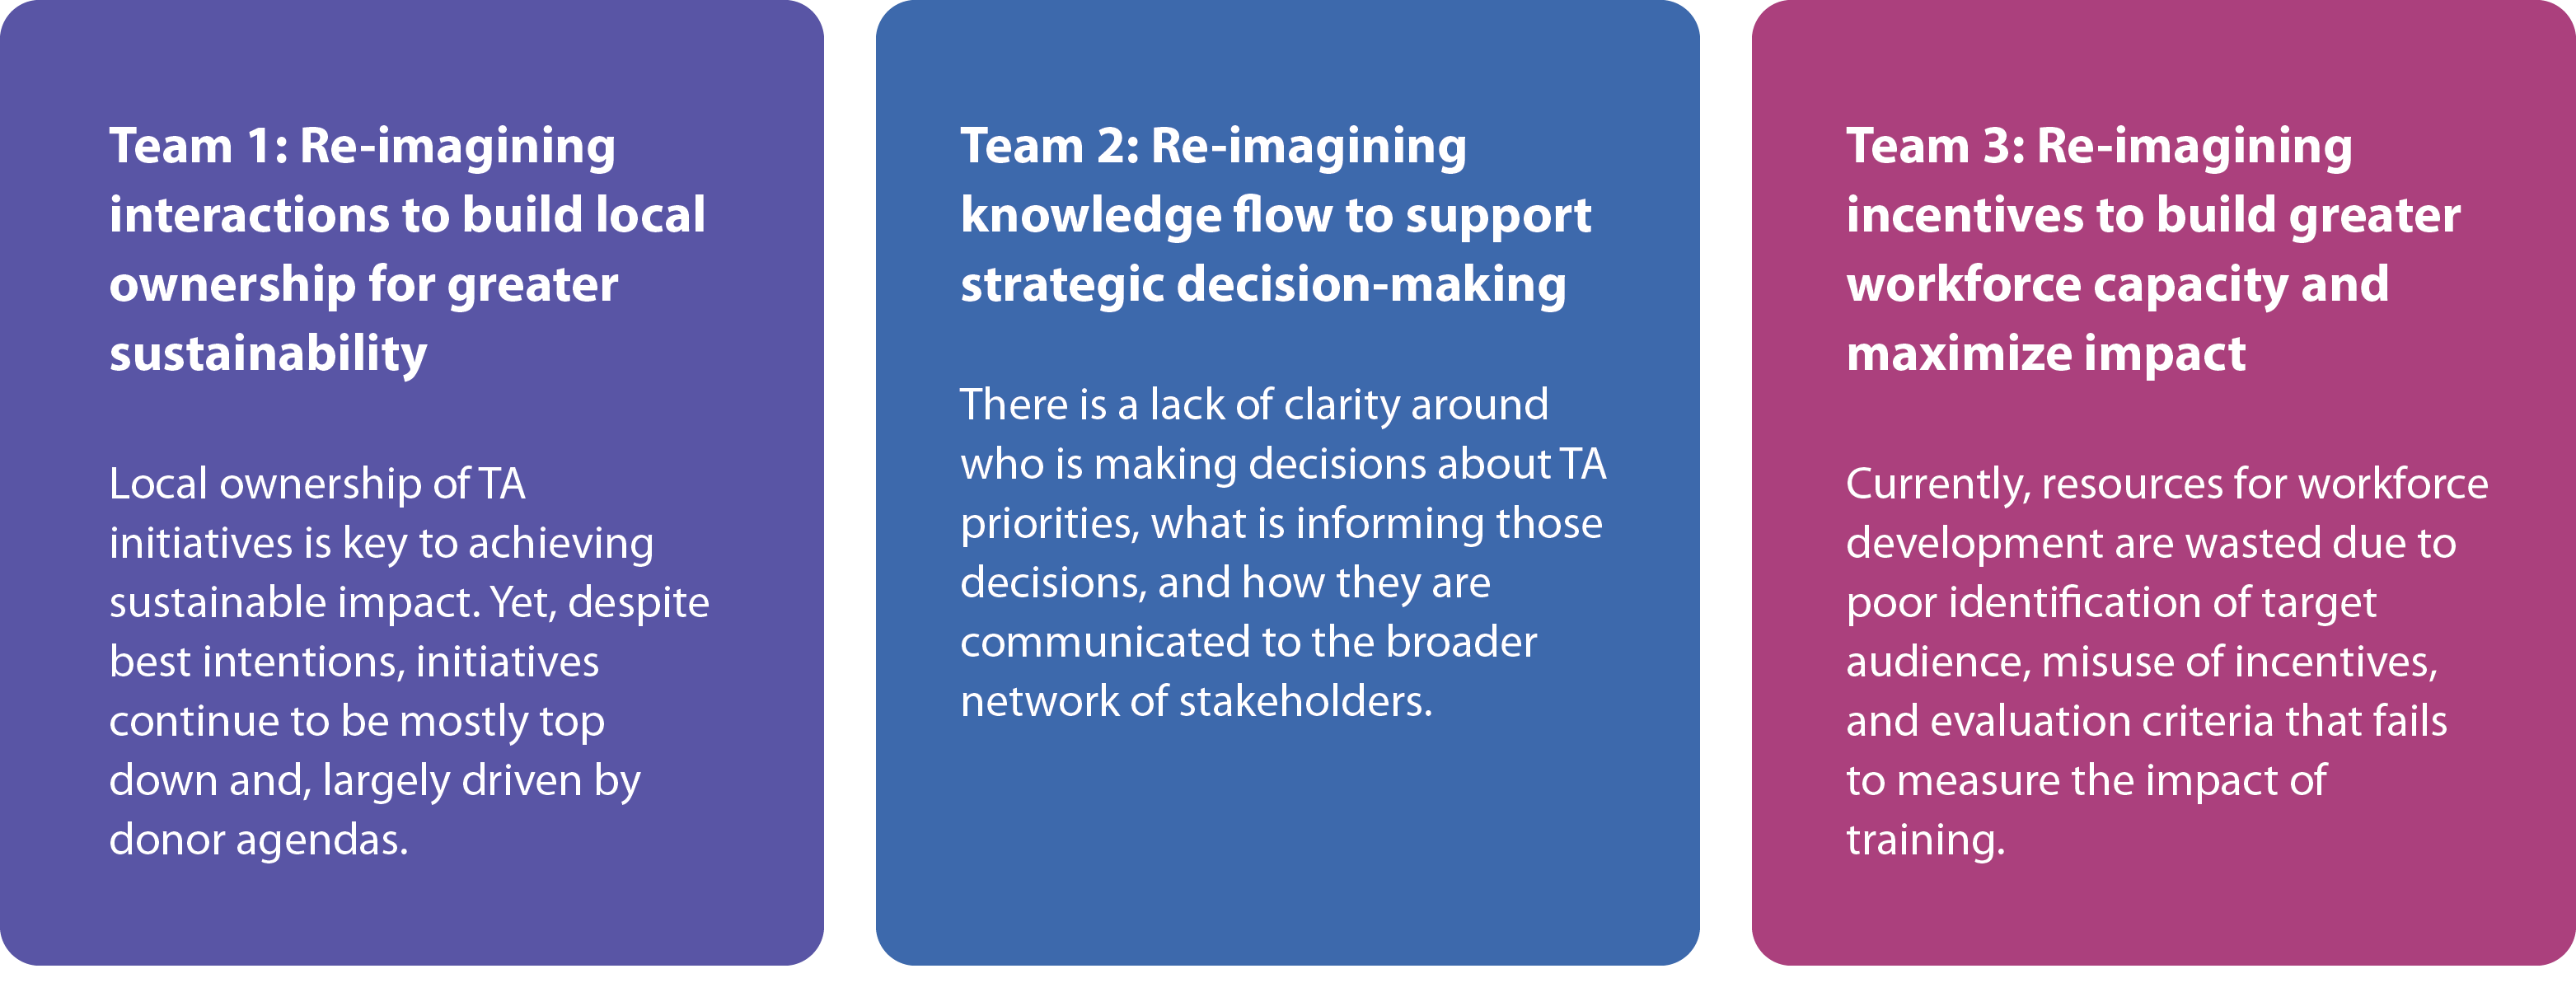 Équipe 1 : ré-imaginer l'interaction pour renforcer l'appropriation locale pour une plus grande durabilité ; Équipe 2 : Ré-imaginer le flux de connaissances pour soutenir la prise de décision stratégique ; Équipe 3 : Réinventer les incitations pour renforcer les capacités de la main-d'œuvre et maximiser l'impact